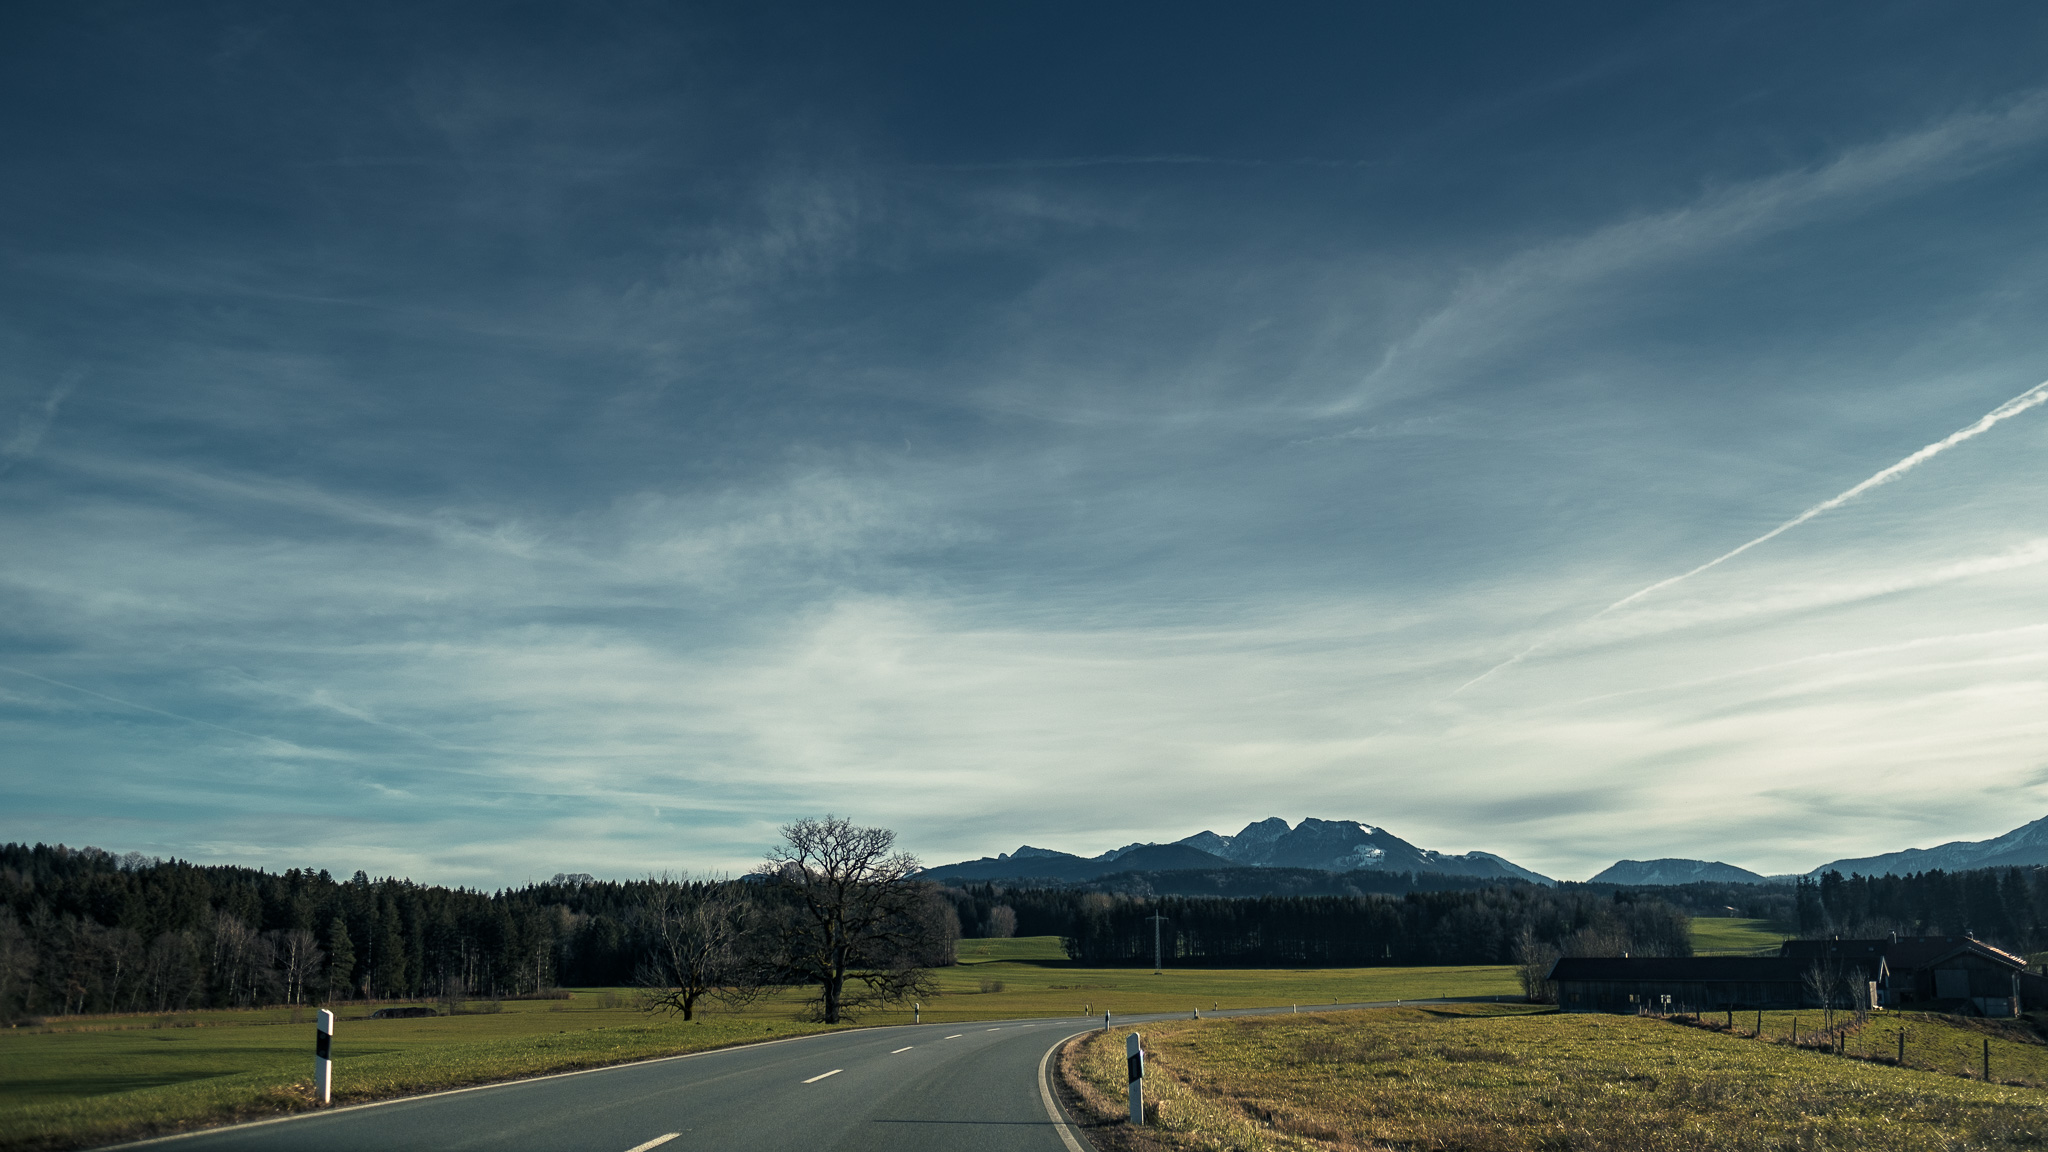 Im Vordergrund biegt eine Straße nach rechts ab, rechts und links grüne Wiesen, am Horizont erheben sich die Alpen, darüber blauer Himmel mit Schleierwolken.